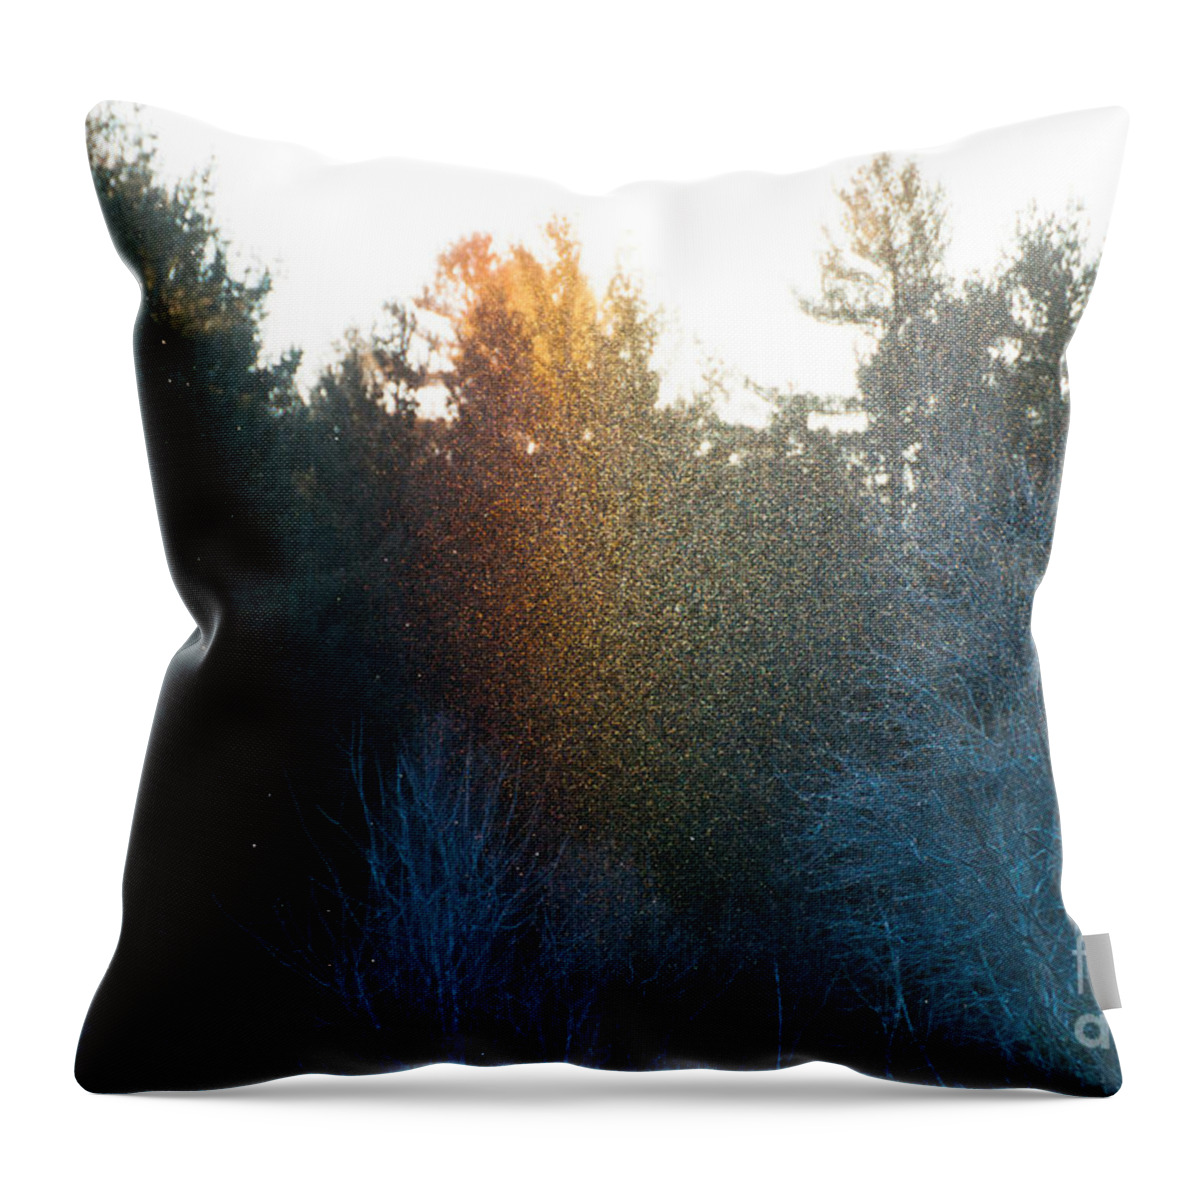 Sundog Throw Pillow featuring the photograph Rainbow Sparkles by Cheryl Baxter